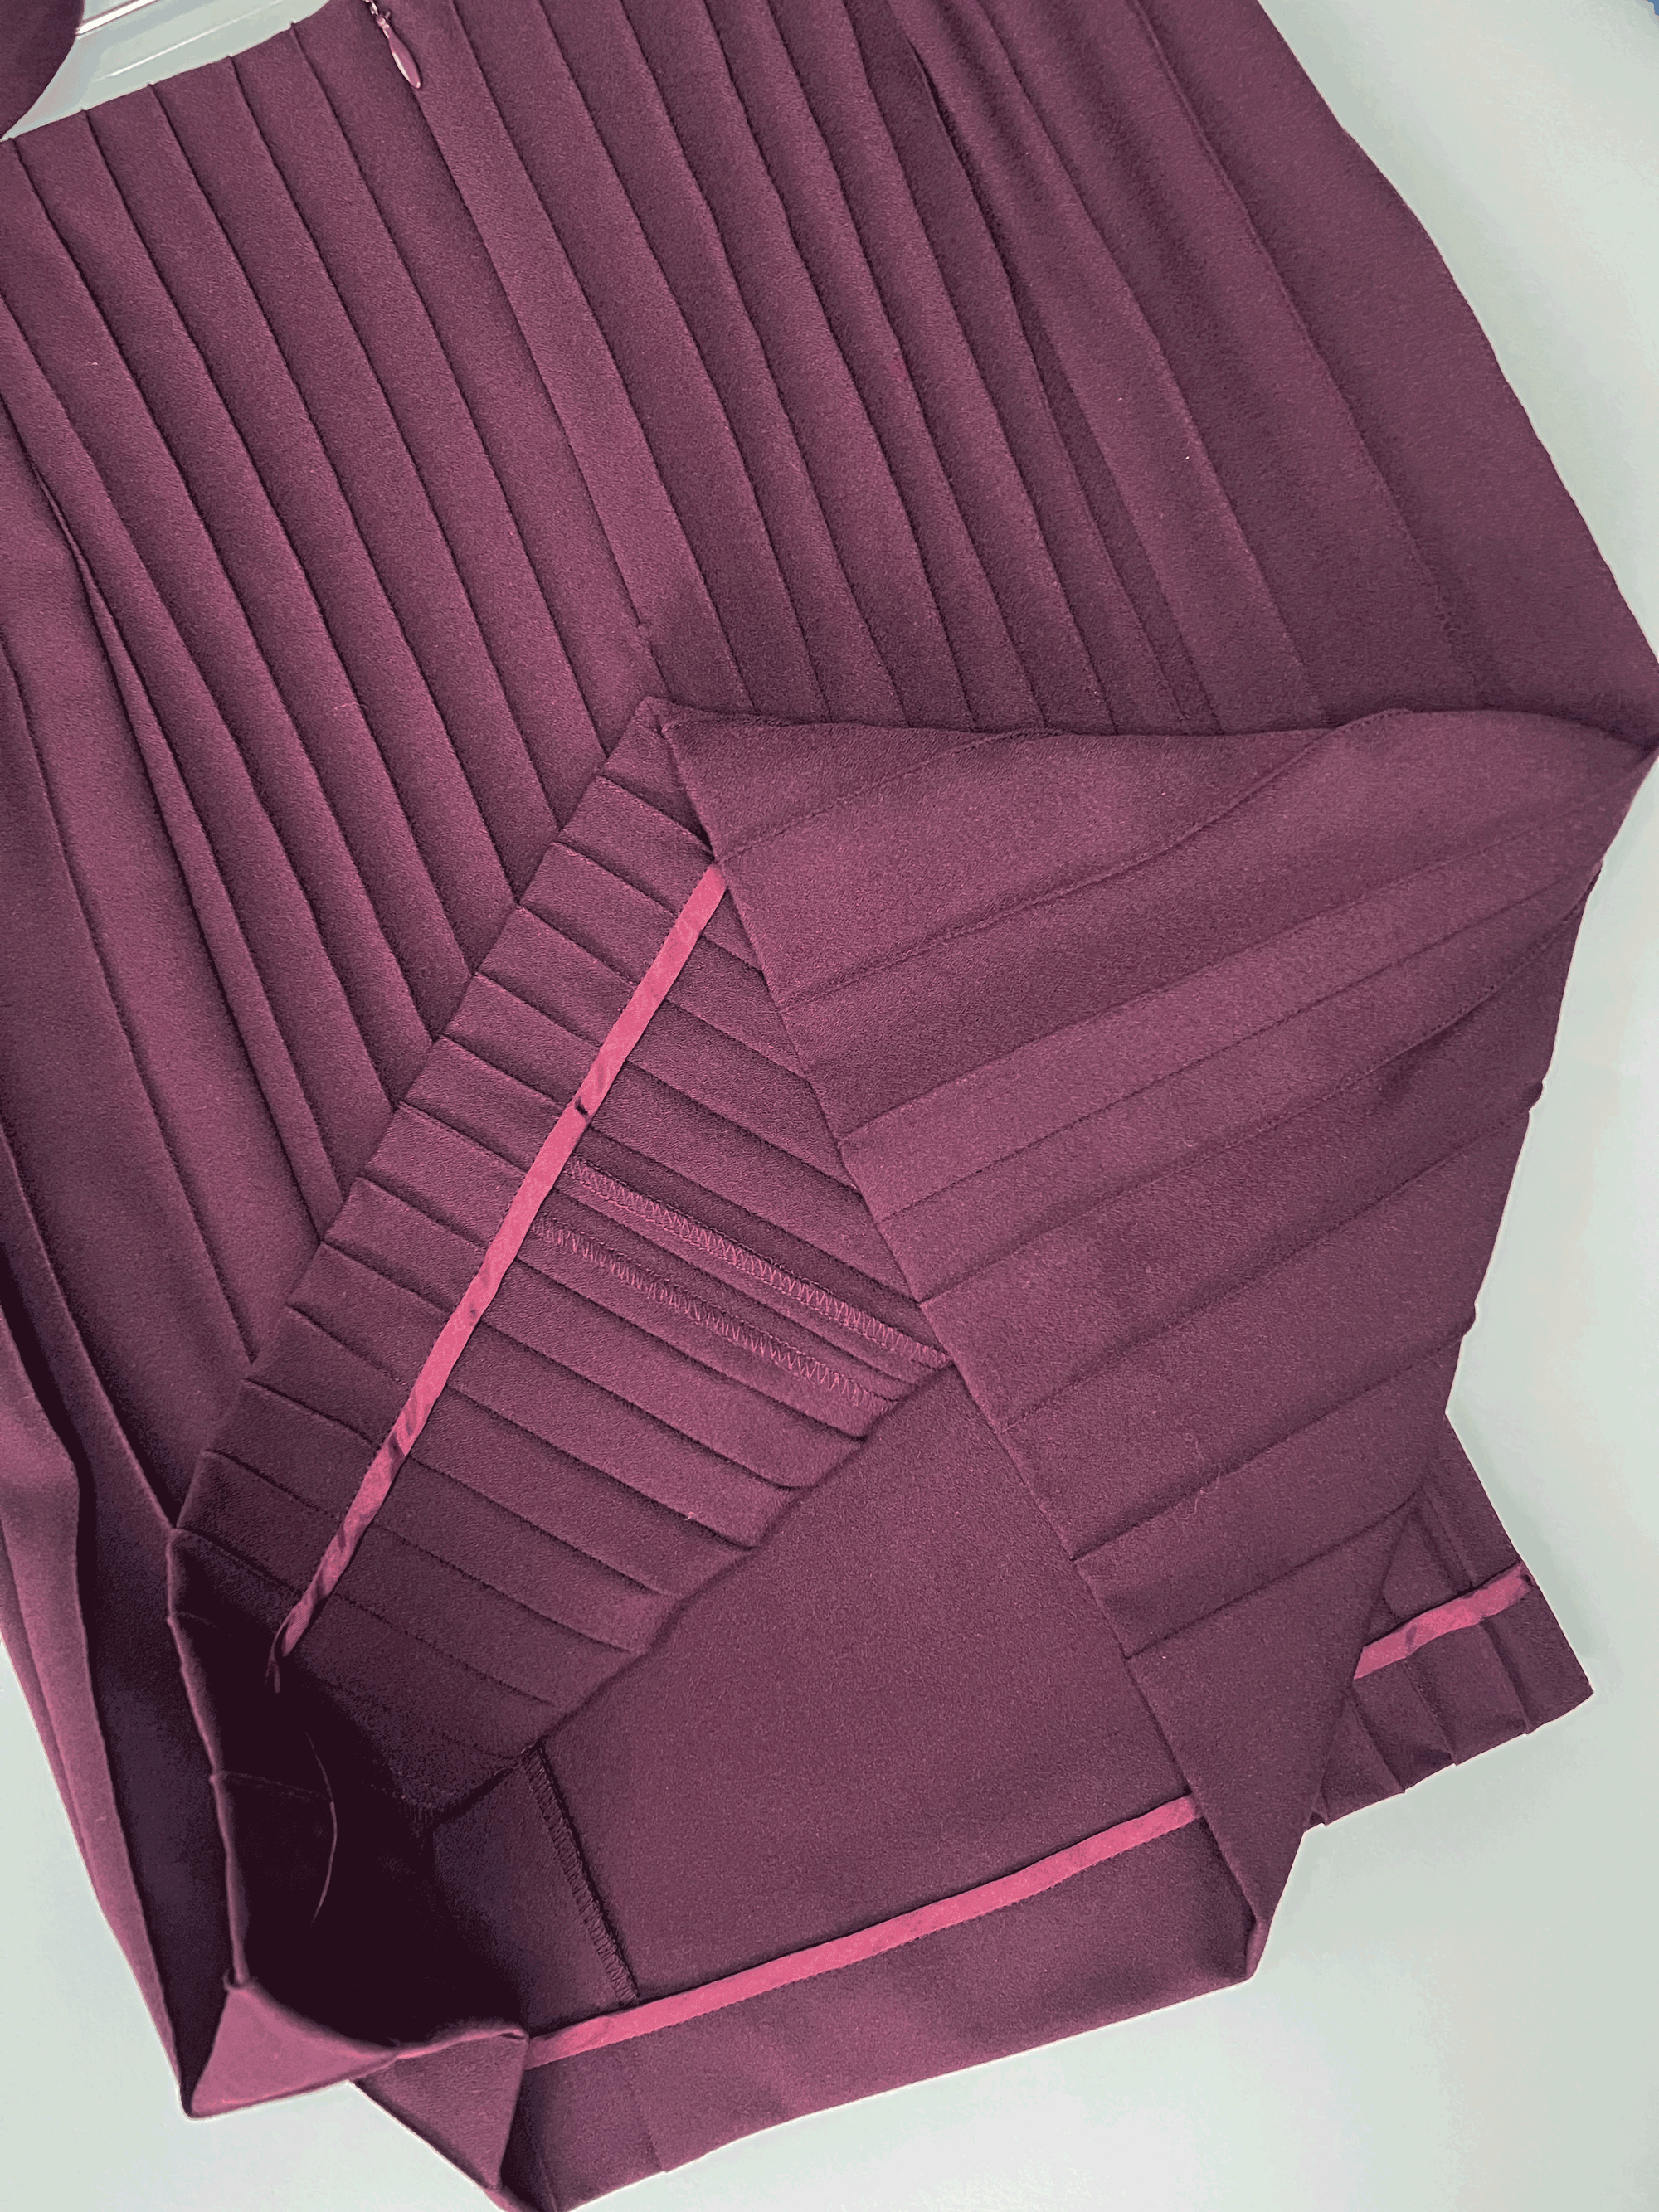 Burgundy viscose-blend crepe skirt suit